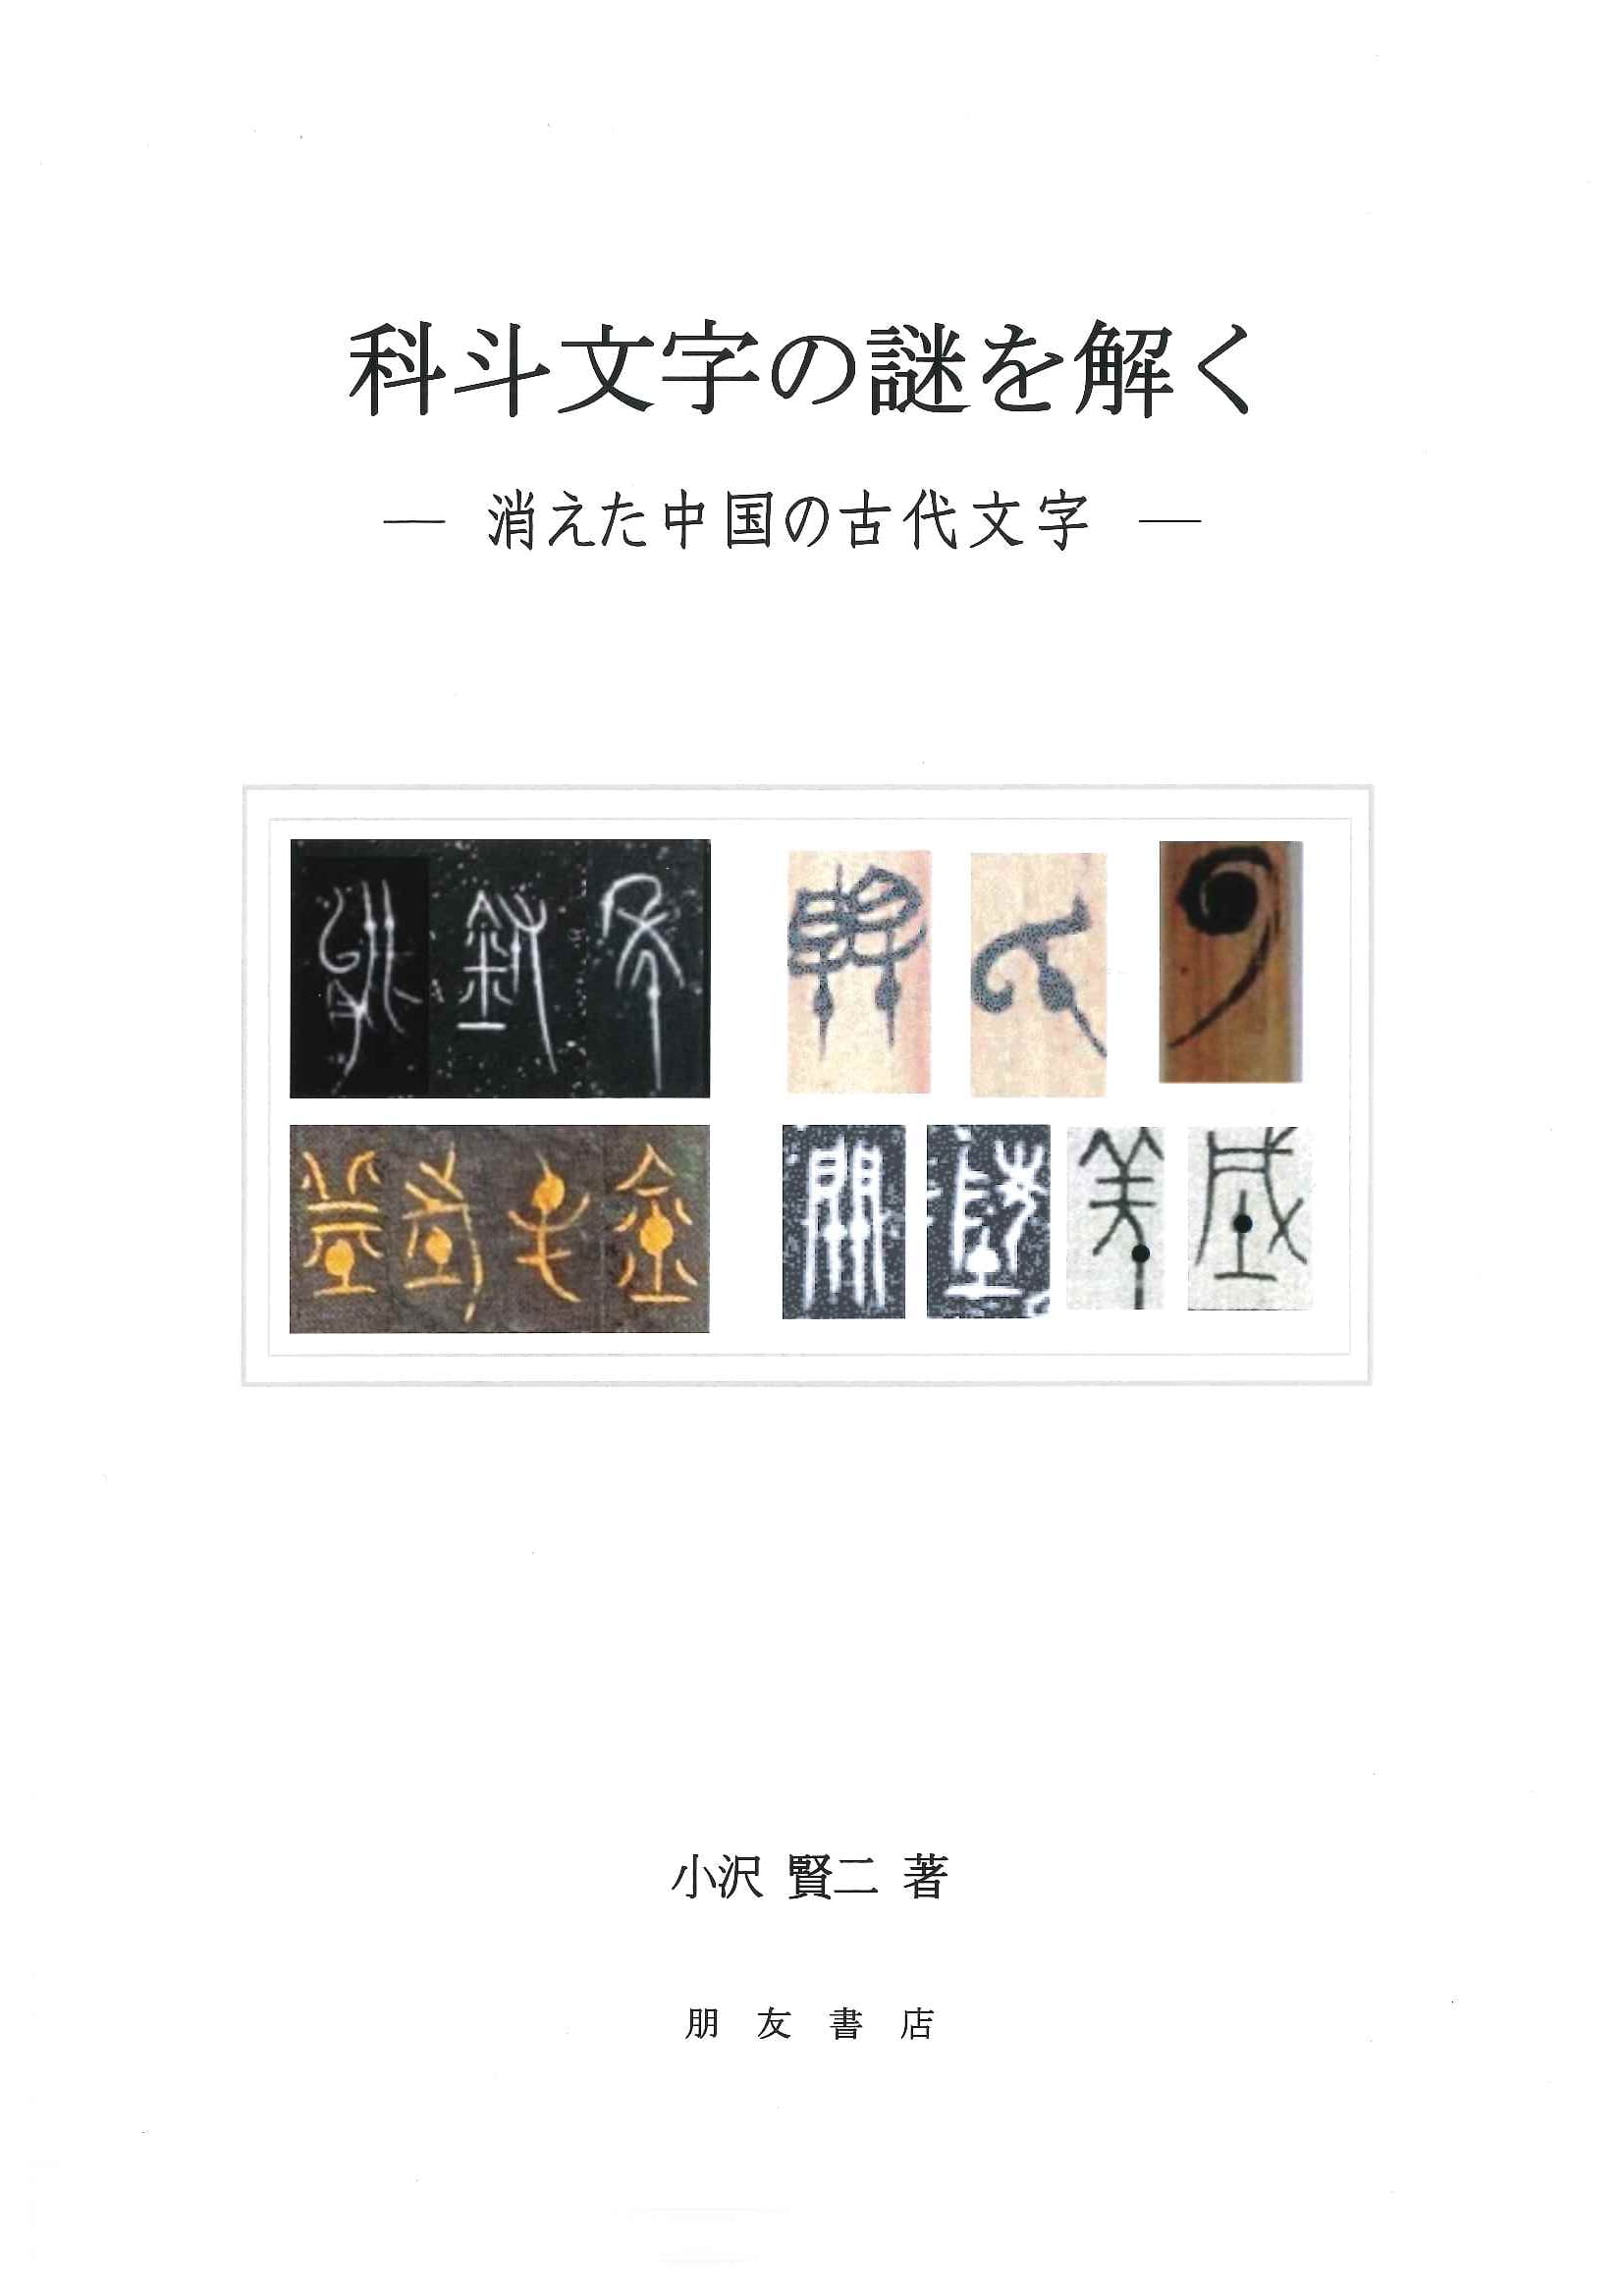 科斗文字の謎を解く －消えた中国の古代文字ー